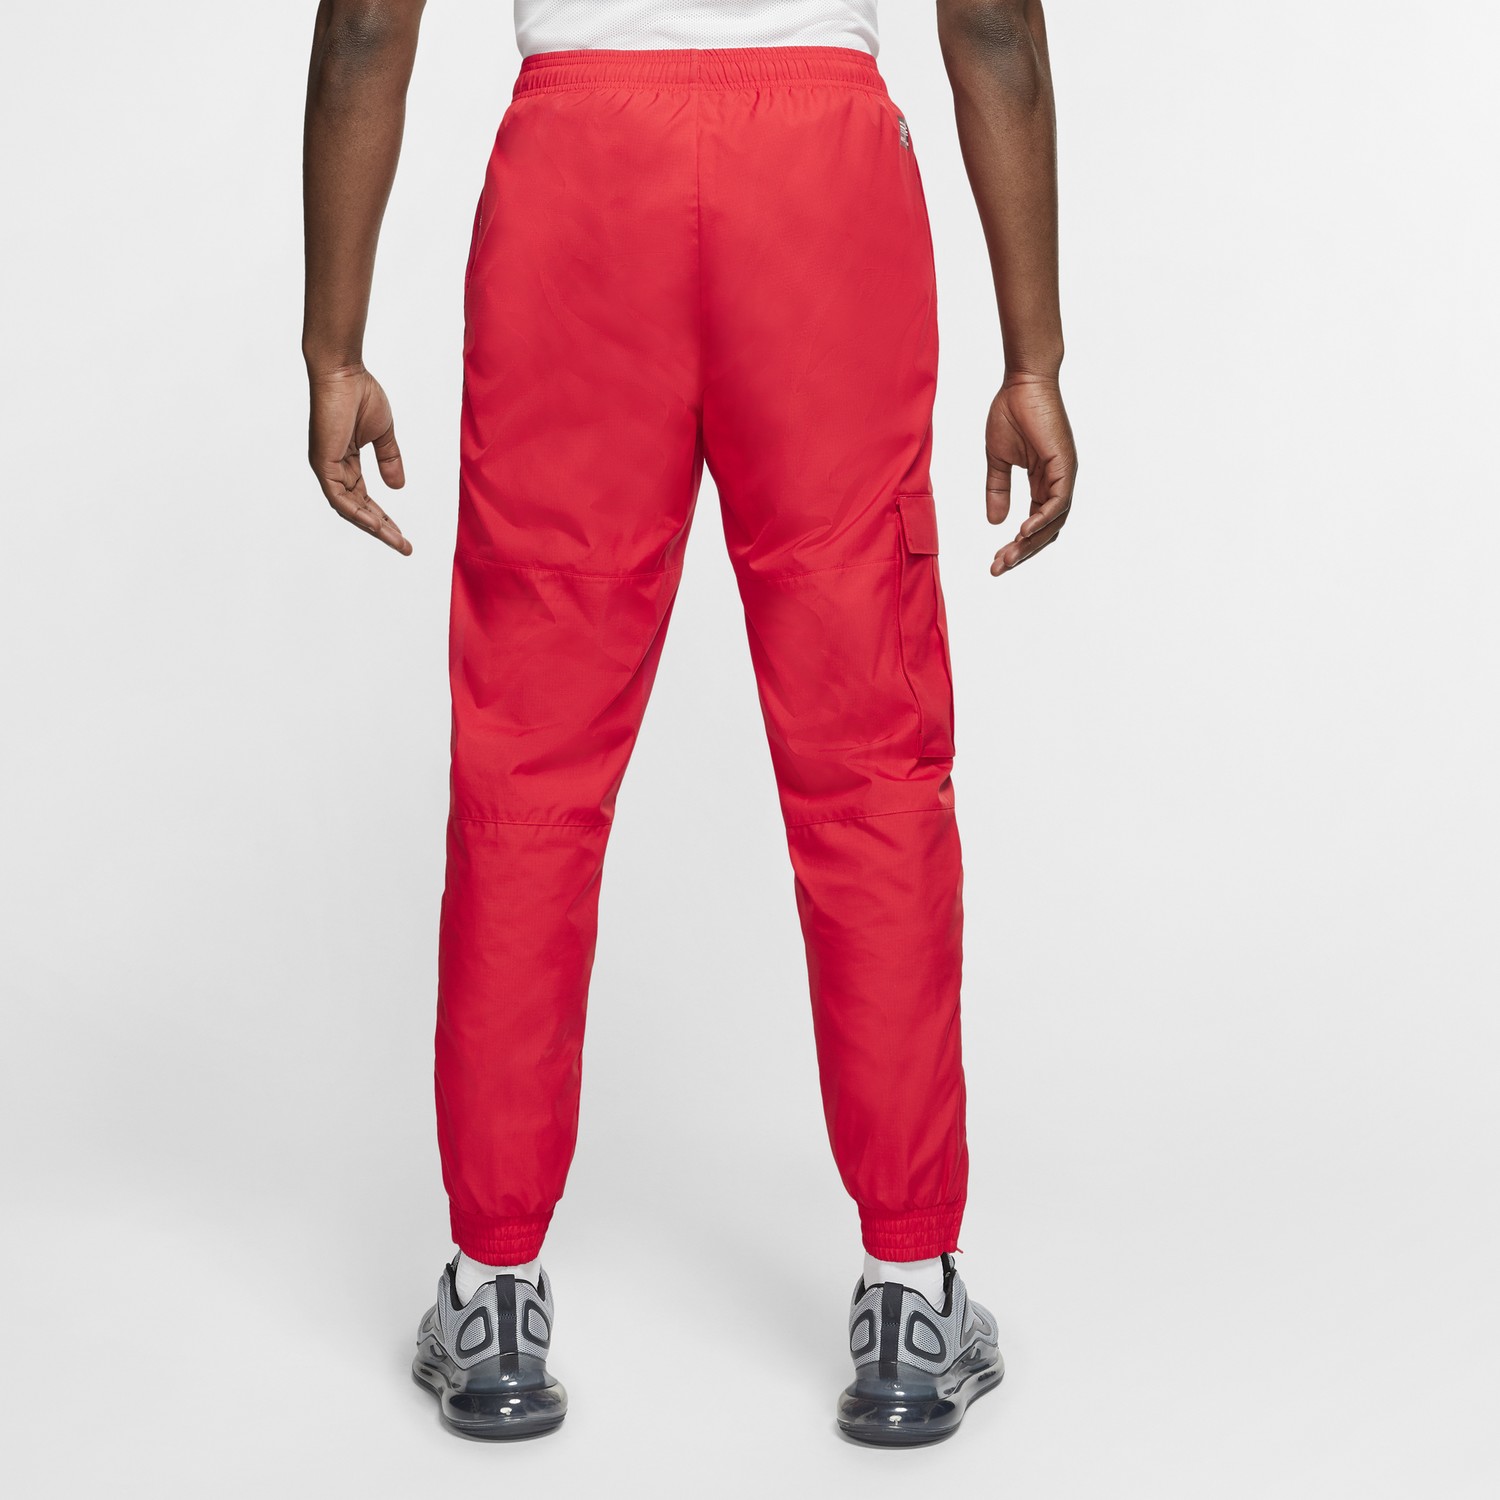 Pantalon survêtement Nike F.C. microfibre rouge sur Foot.fr